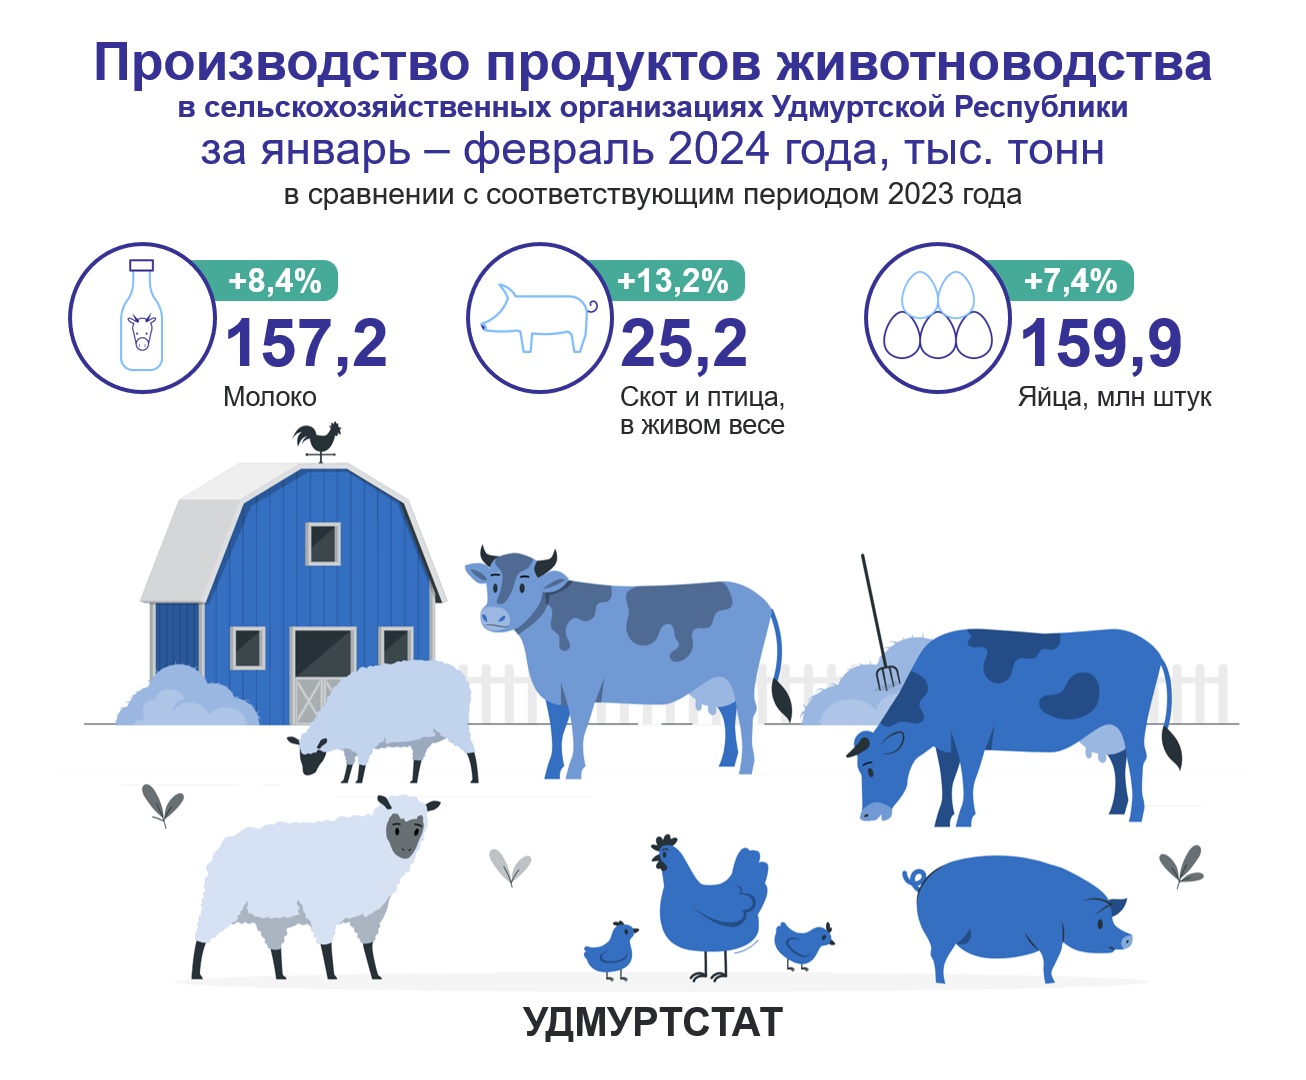 Производство продуктов животноводства за январь – февраль 2024 года.